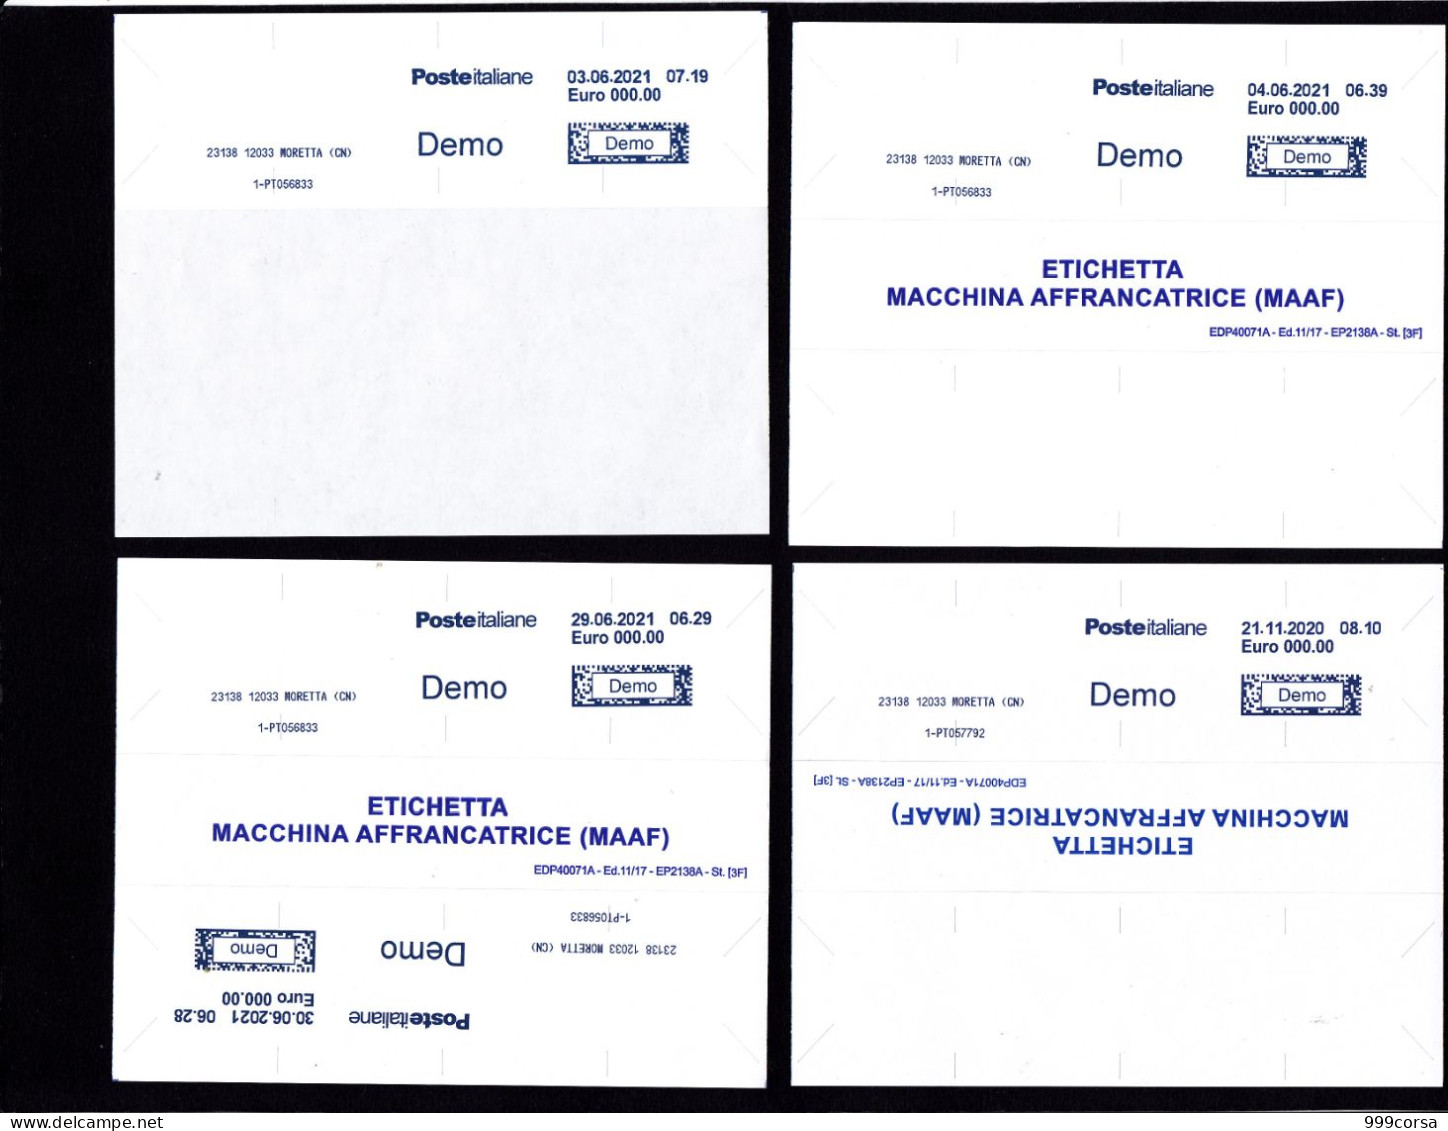 Etichetta Prova Per Testare Funzionamento Macchina,ancora Su Supporto Carta Siliconata, Specimen (1) - Viñetas De Franqueo [ATM]